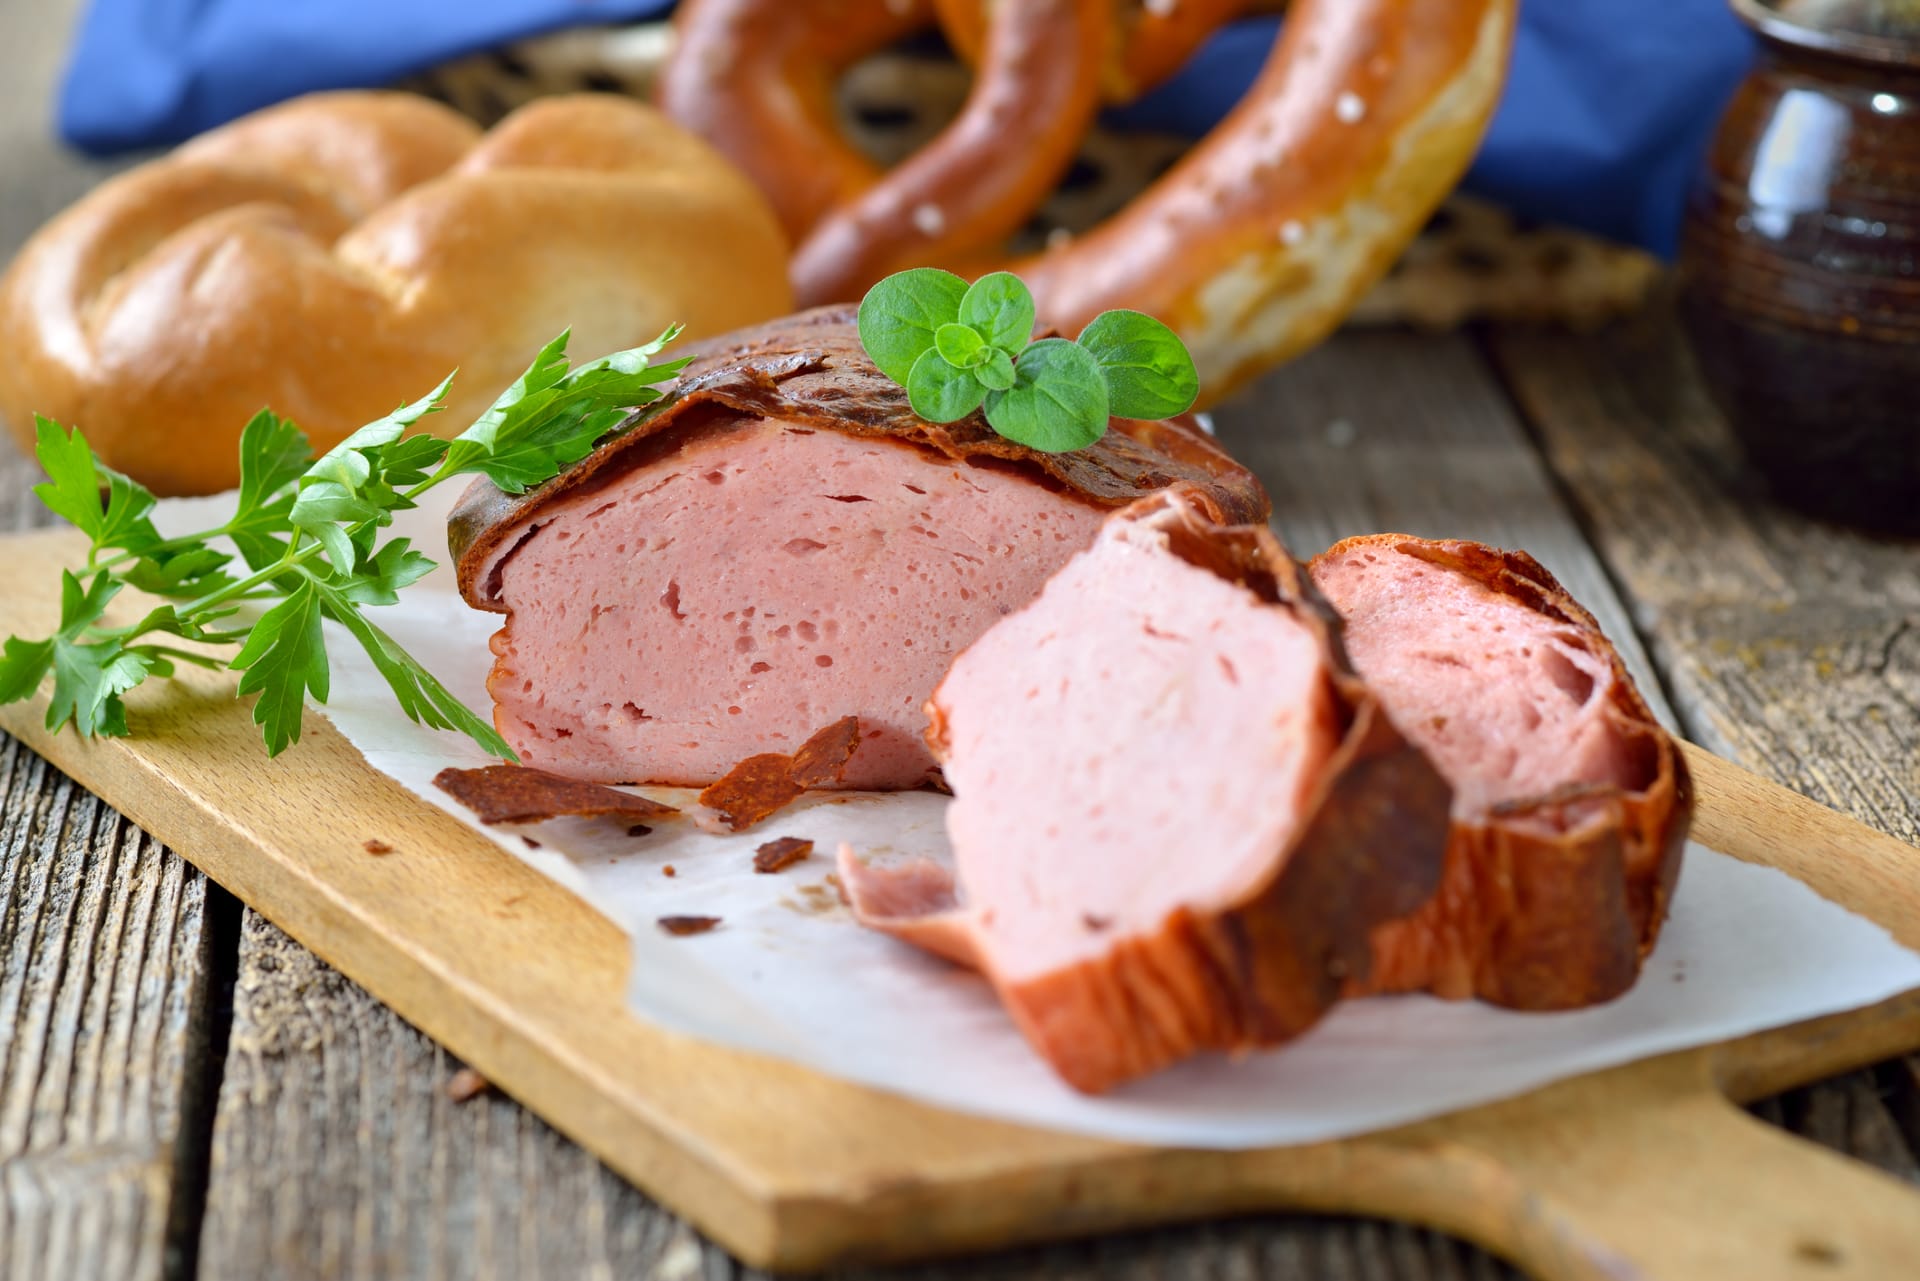 Leberkäse – tradiční bavorská sekaná ze tří druhů masa